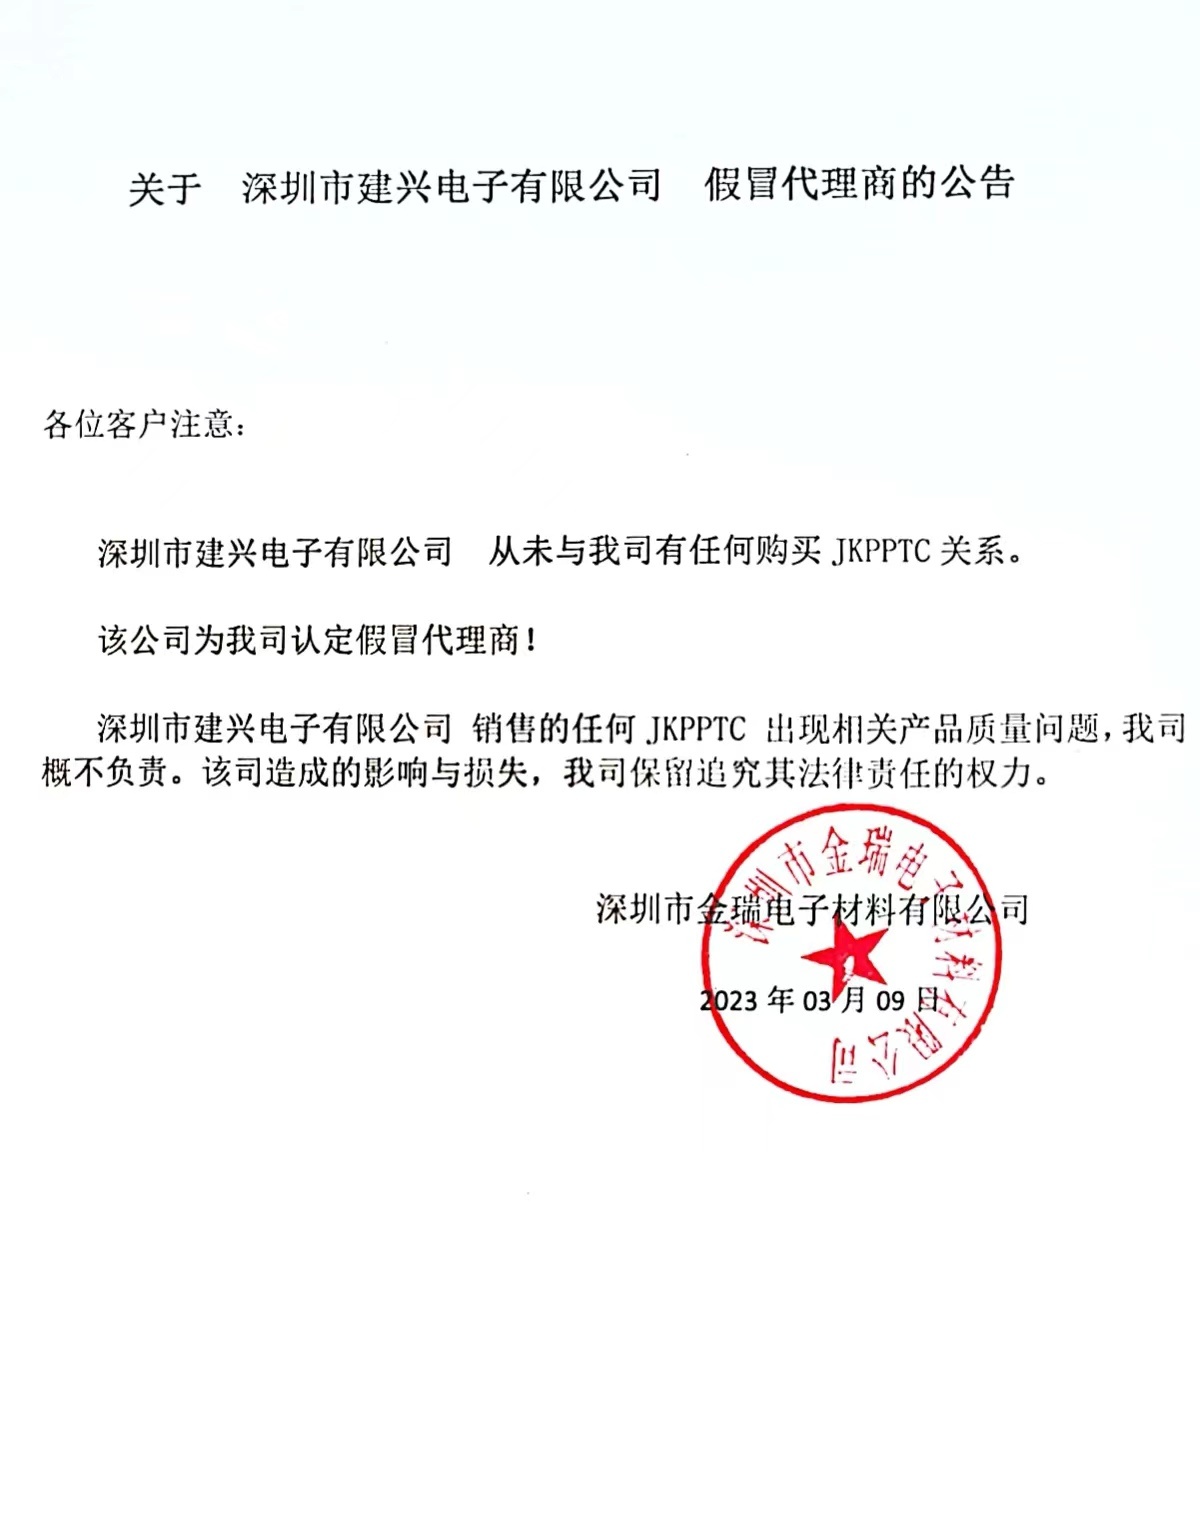 关于深圳市建兴电子有限公司 假冒代理商公告